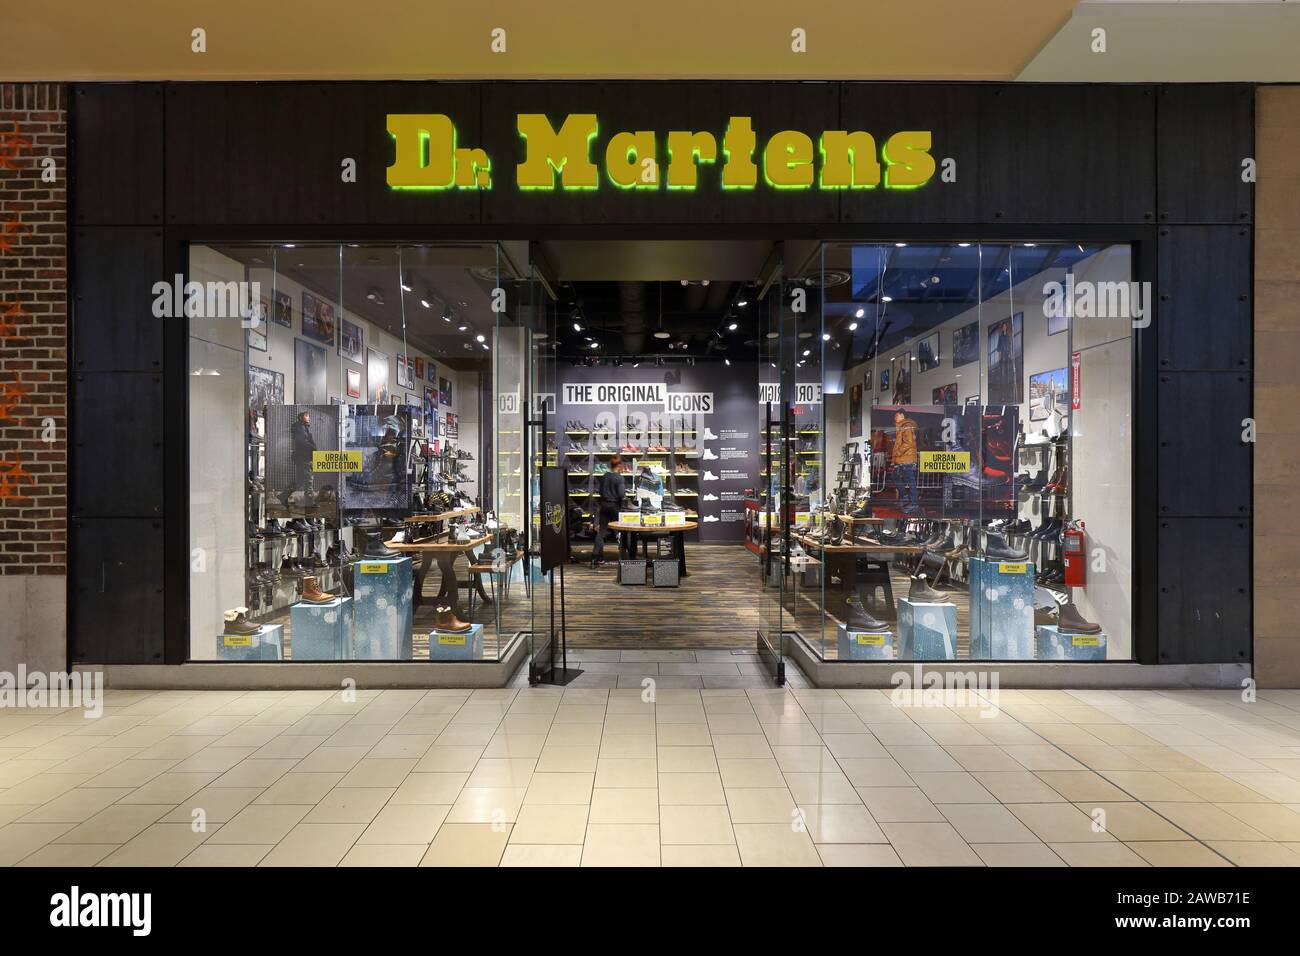 Une boutique de chaussures Dr. Martens dans un centre commercial à New York, NY. Banque D'Images